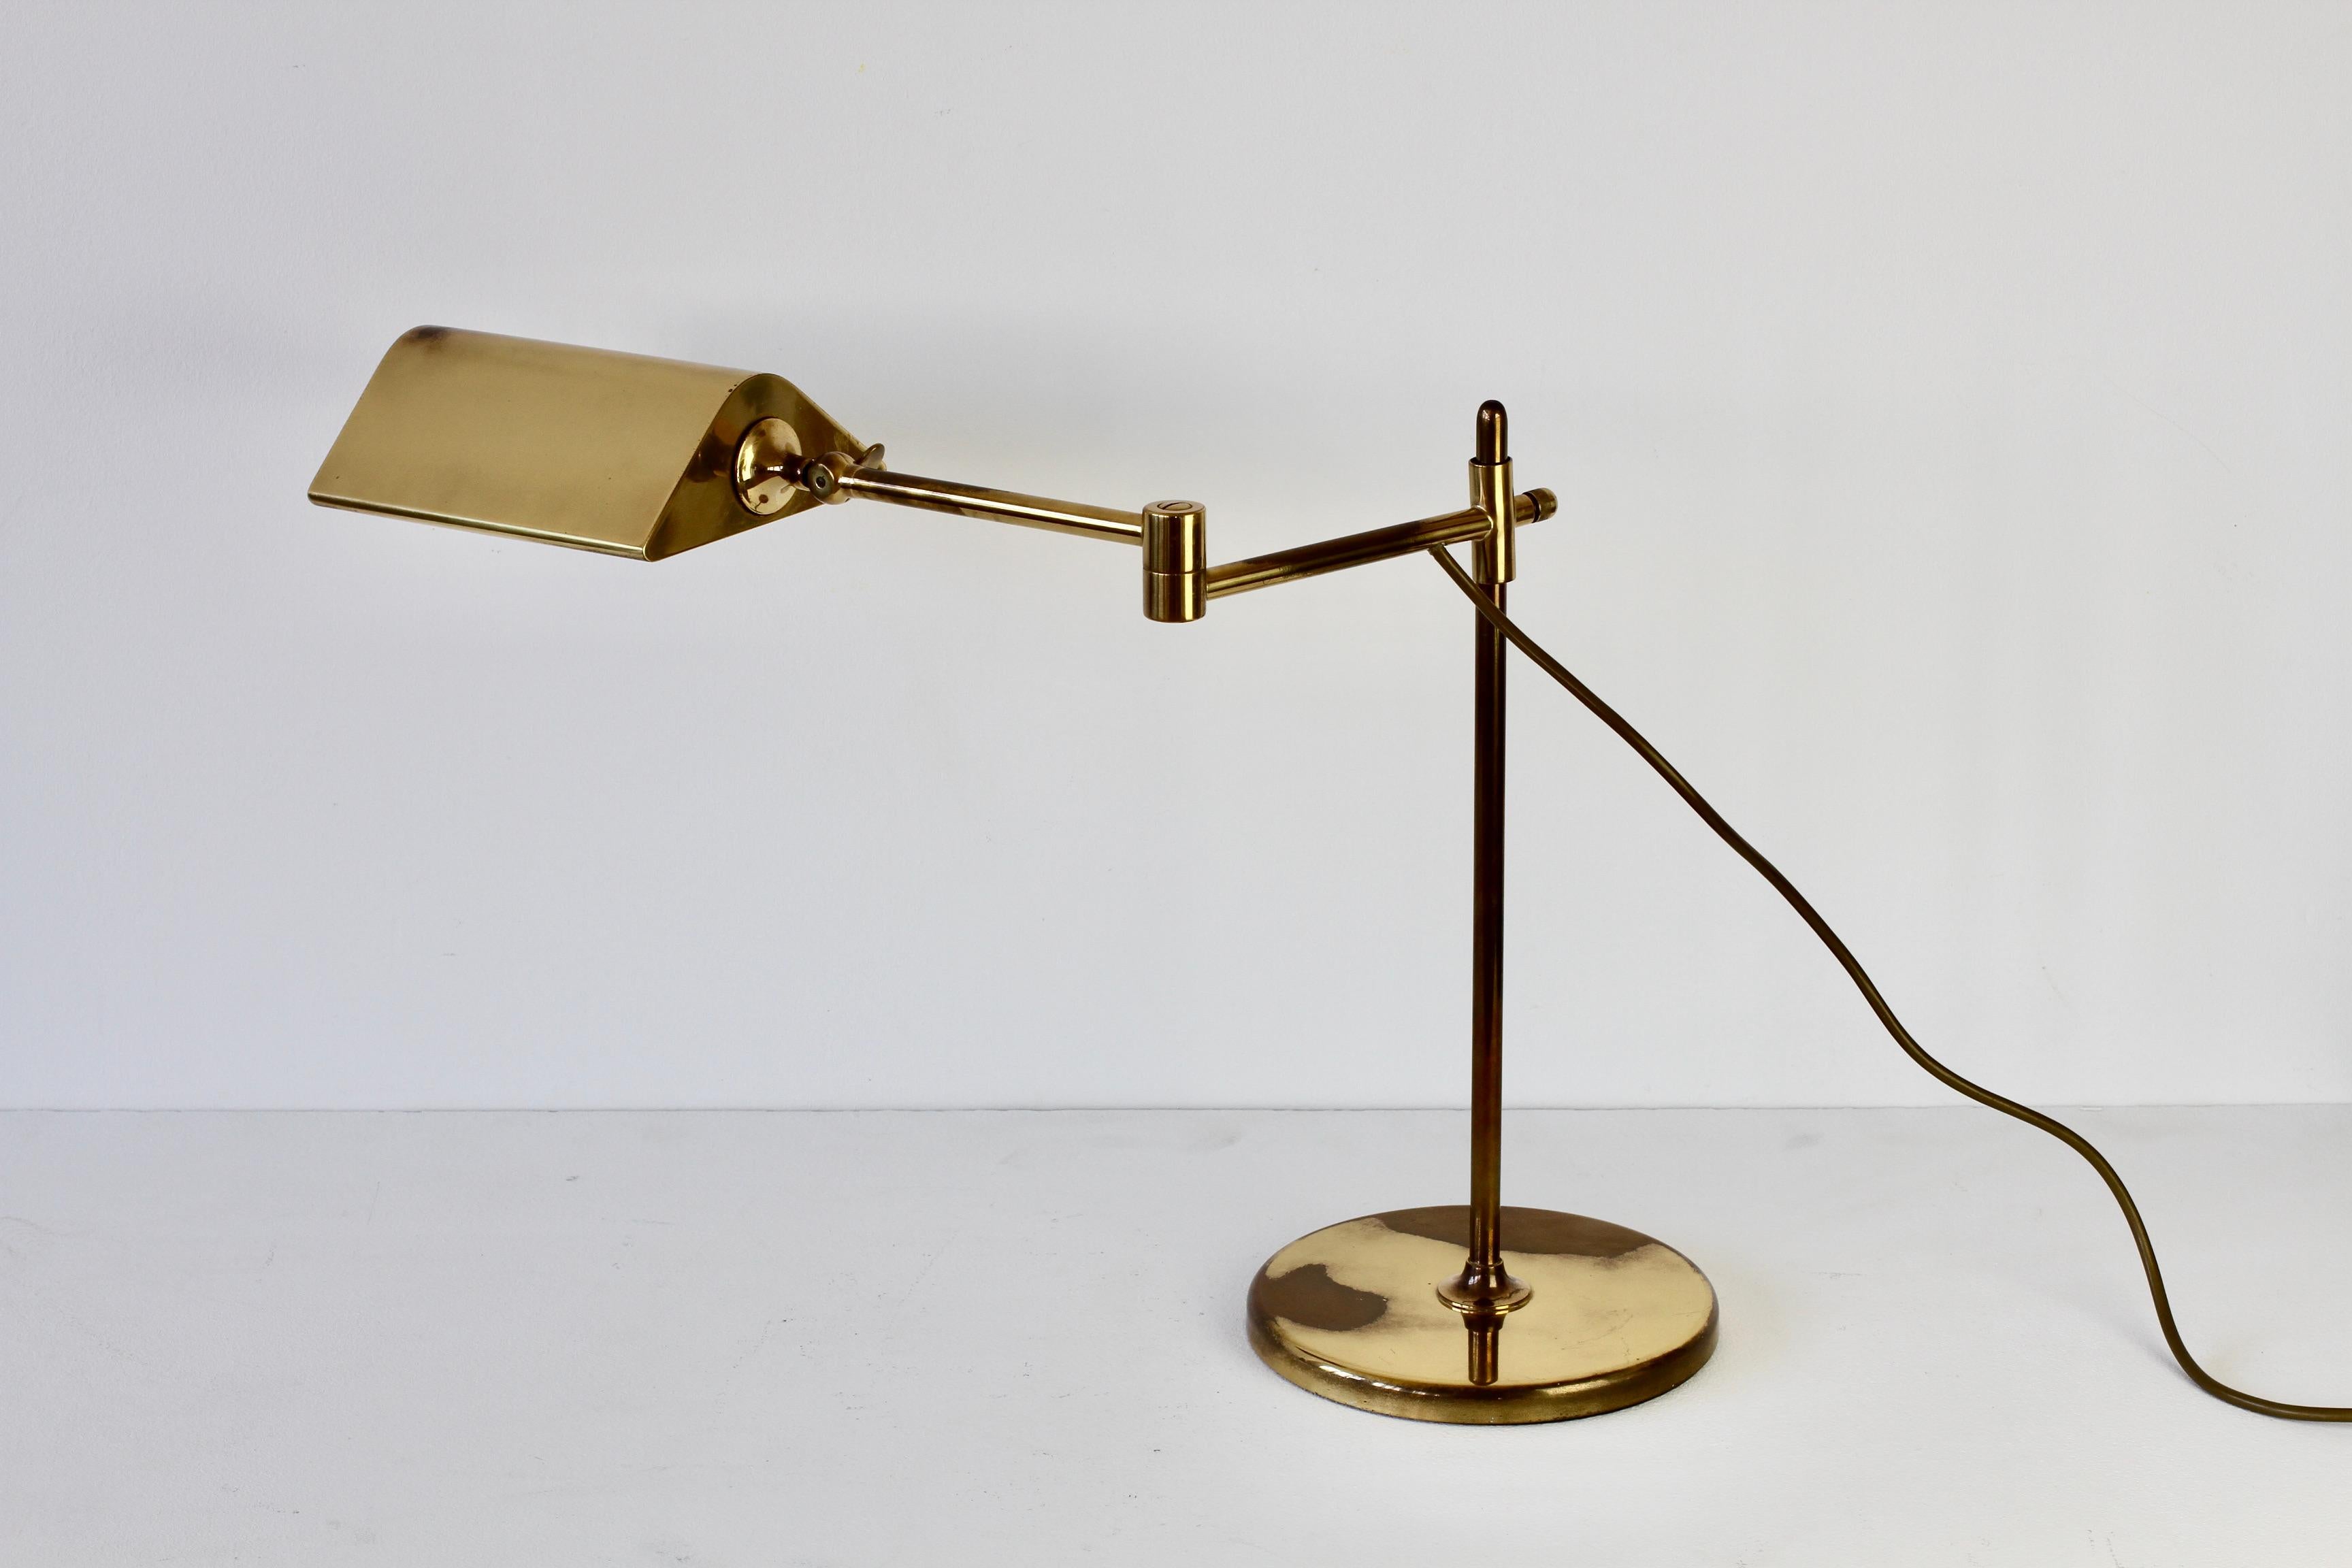 Wunderbare Mid-Century Modern vintage deutsche Tischlampe oder Schreibtischlampe entworfen von Florian Schulz in den 1970er Jahren. Diese Leuchte wurde in den 1970er Jahren hergestellt und ist ein recht seltenes Modell mit dem doppelgelenkigen,